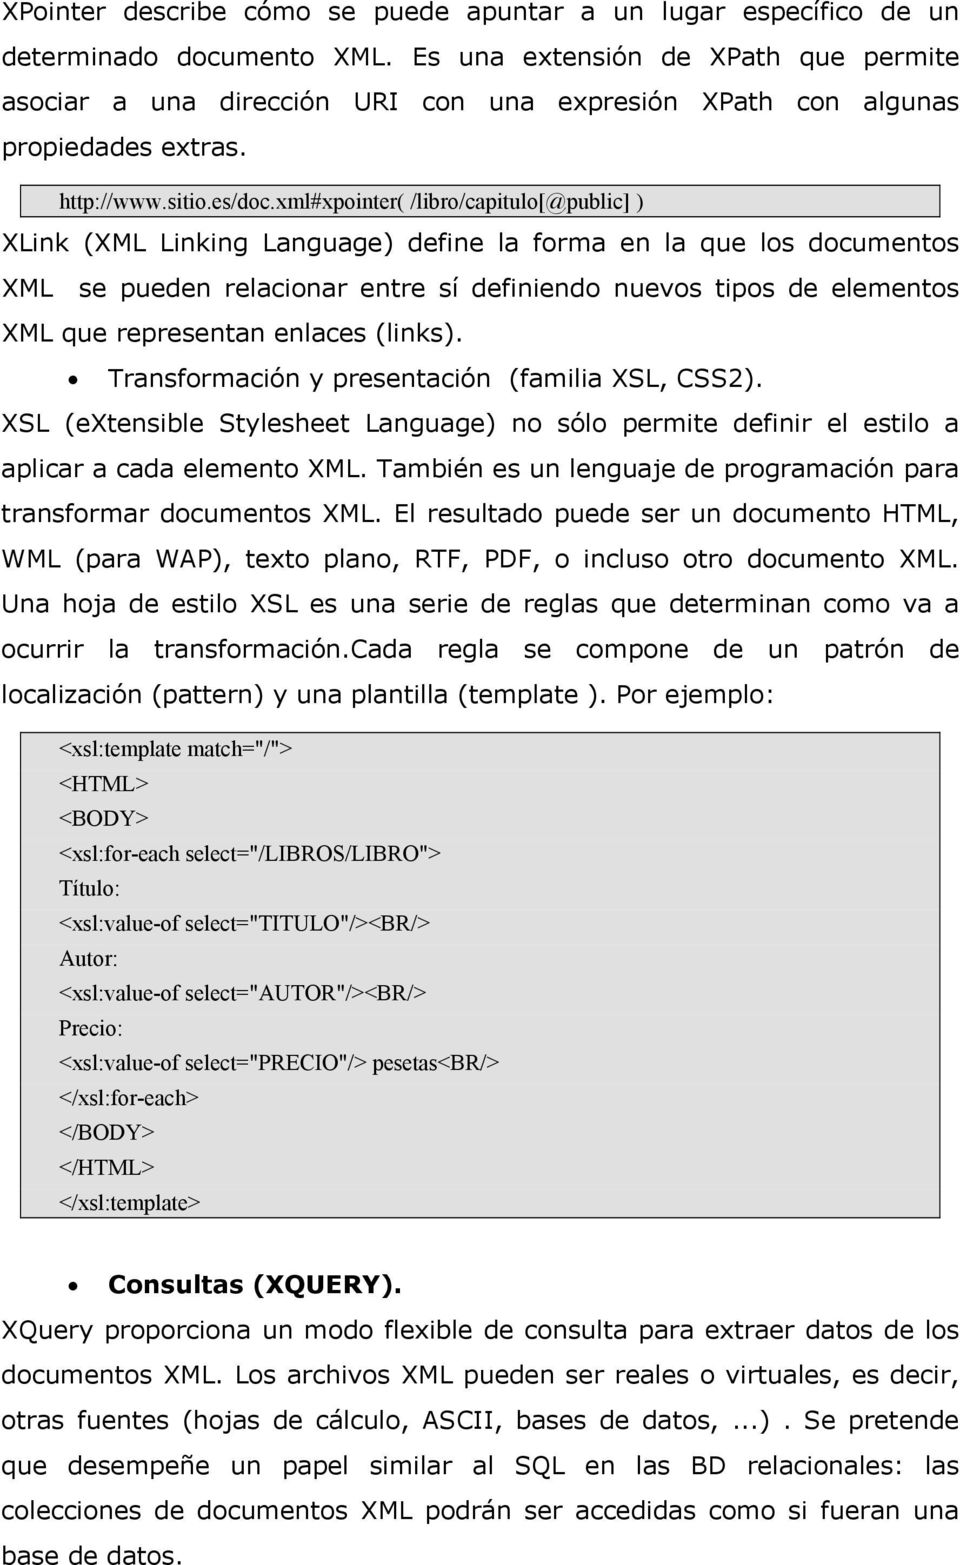 xml#xpointer( /libro/capitulo[@public] ) XLink (XML Linking Language) define la forma en la que los documentos XML se pueden relacionar entre sí definiendo nuevos tipos de elementos XML que